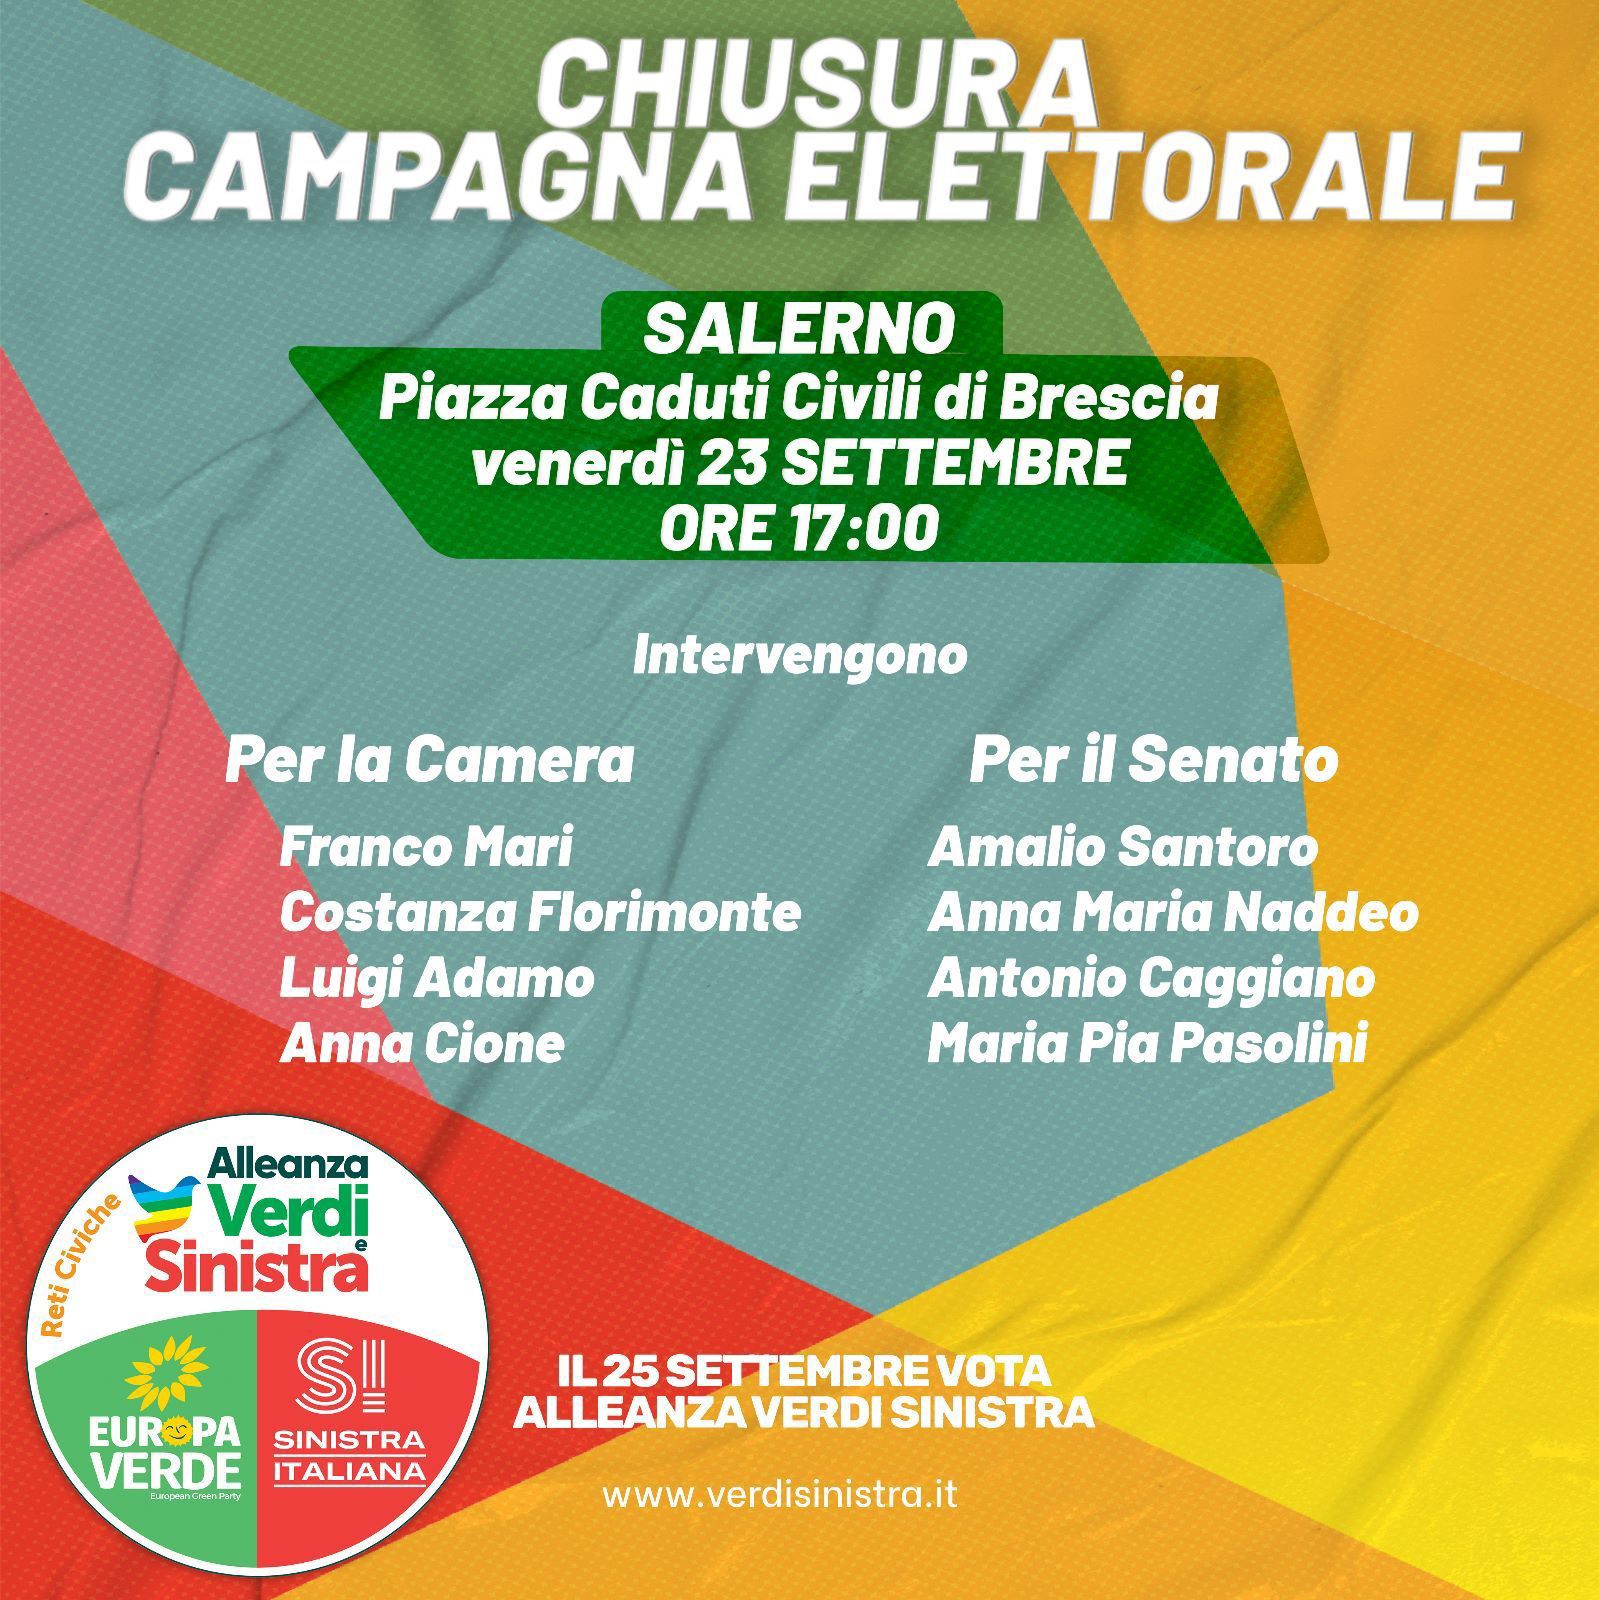 Salerno: Politiche, “Alleanza Verdi Sinistra” chiude campagna elettorale con successo